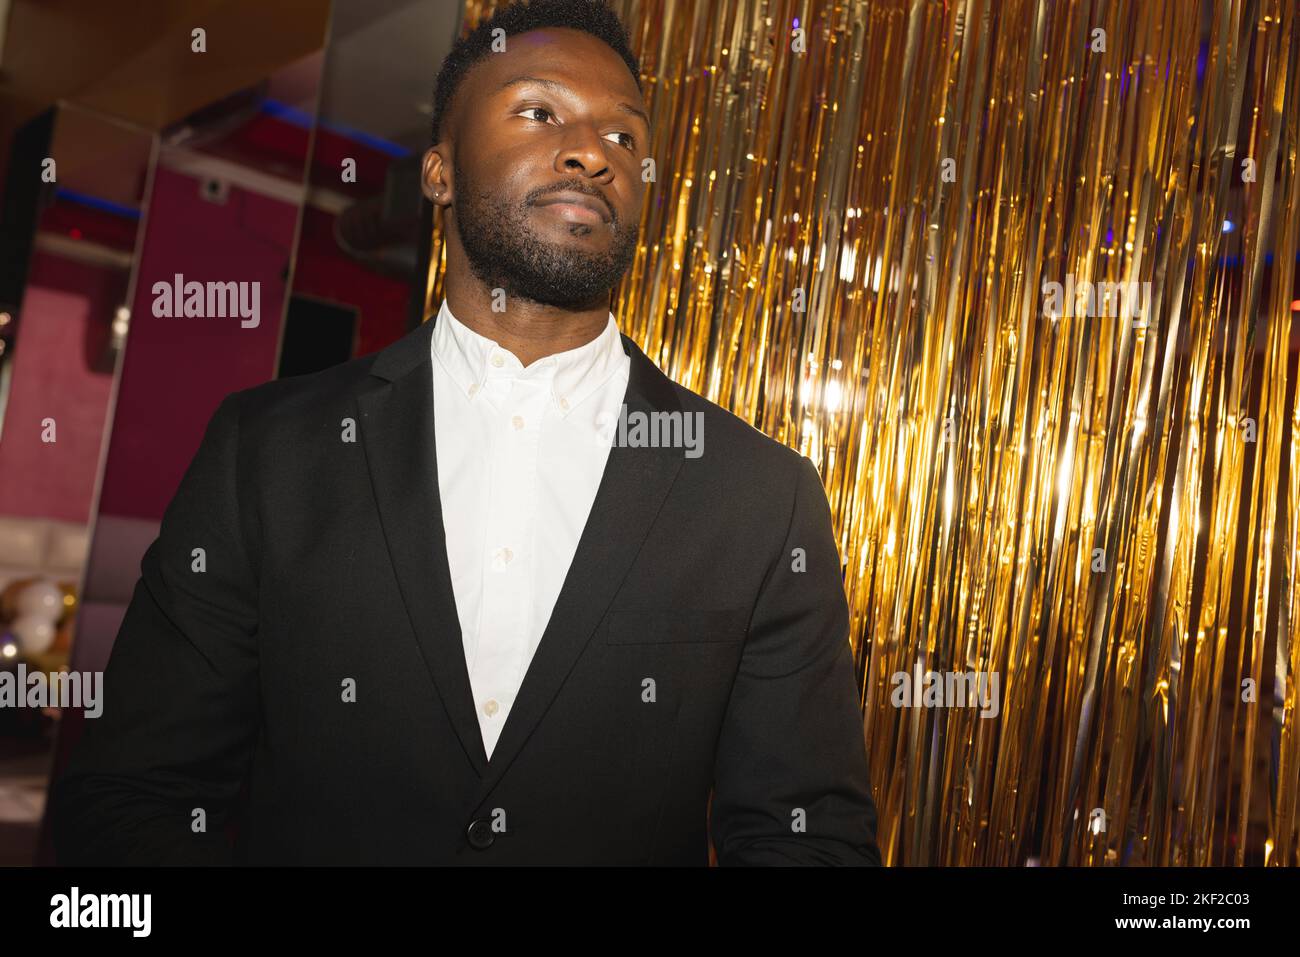 Schlau gekleideter, seriöser afroamerikanischer Portier in einem Nachtclub, der wegschaut Stockfoto